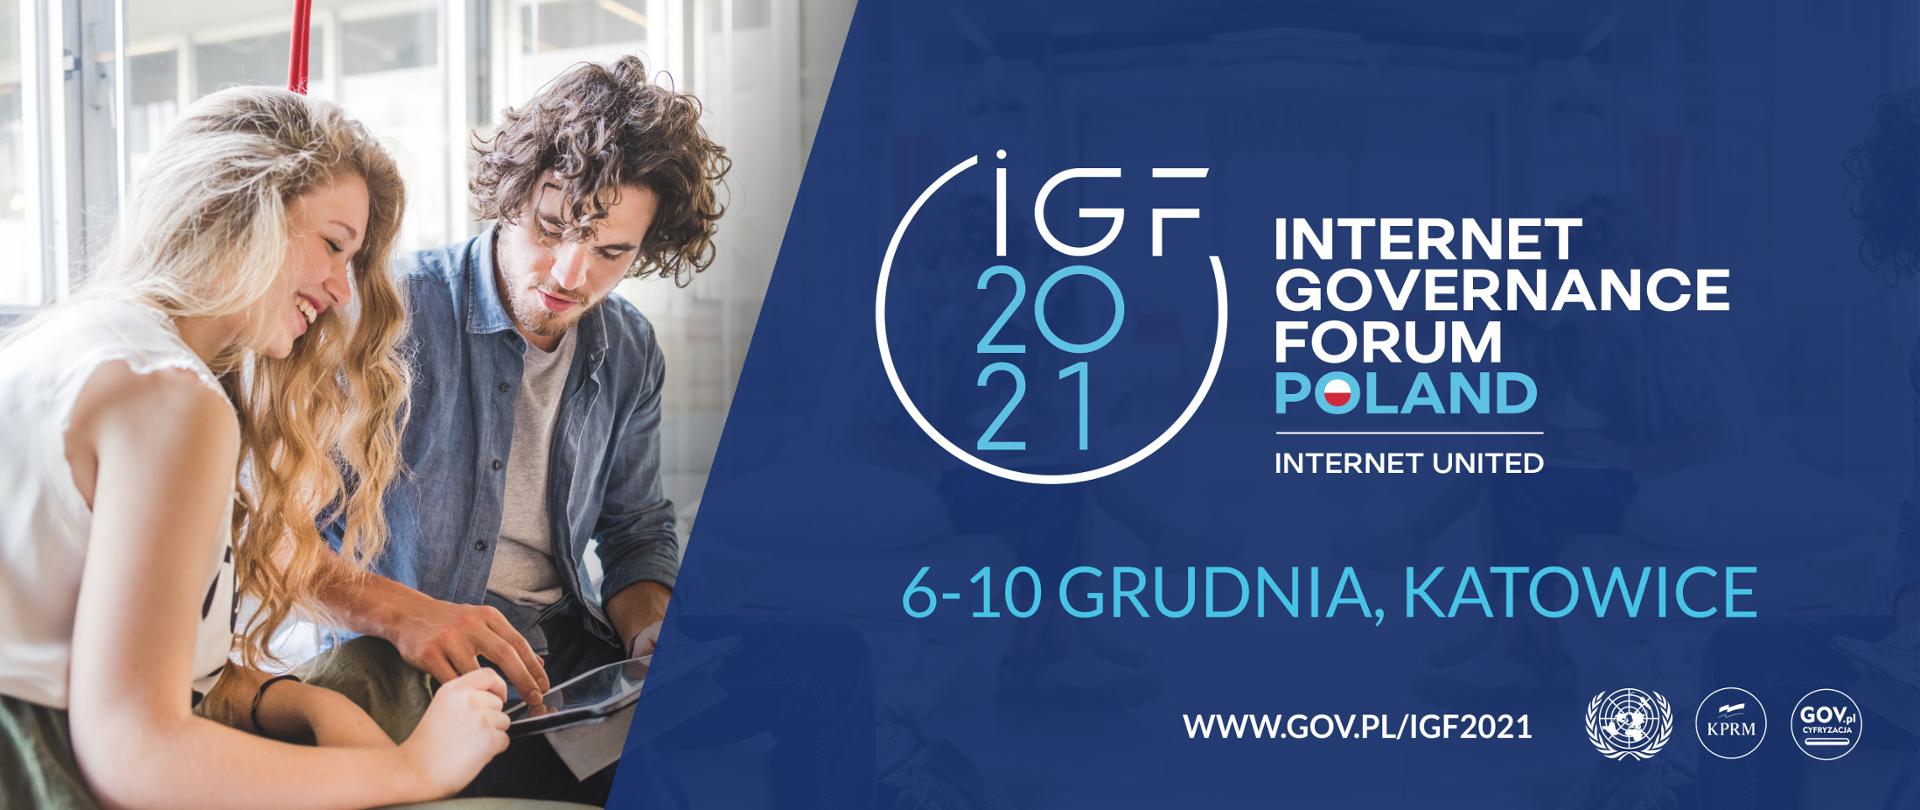 Z lewej strony zdjęcie dwojga uśmiechniętych ludzi korzystających z tabletu. Z prawej na niebieskim tle - logo IGF 2021 oraz data wydarzenia 6-10 grudnia, Katowice.